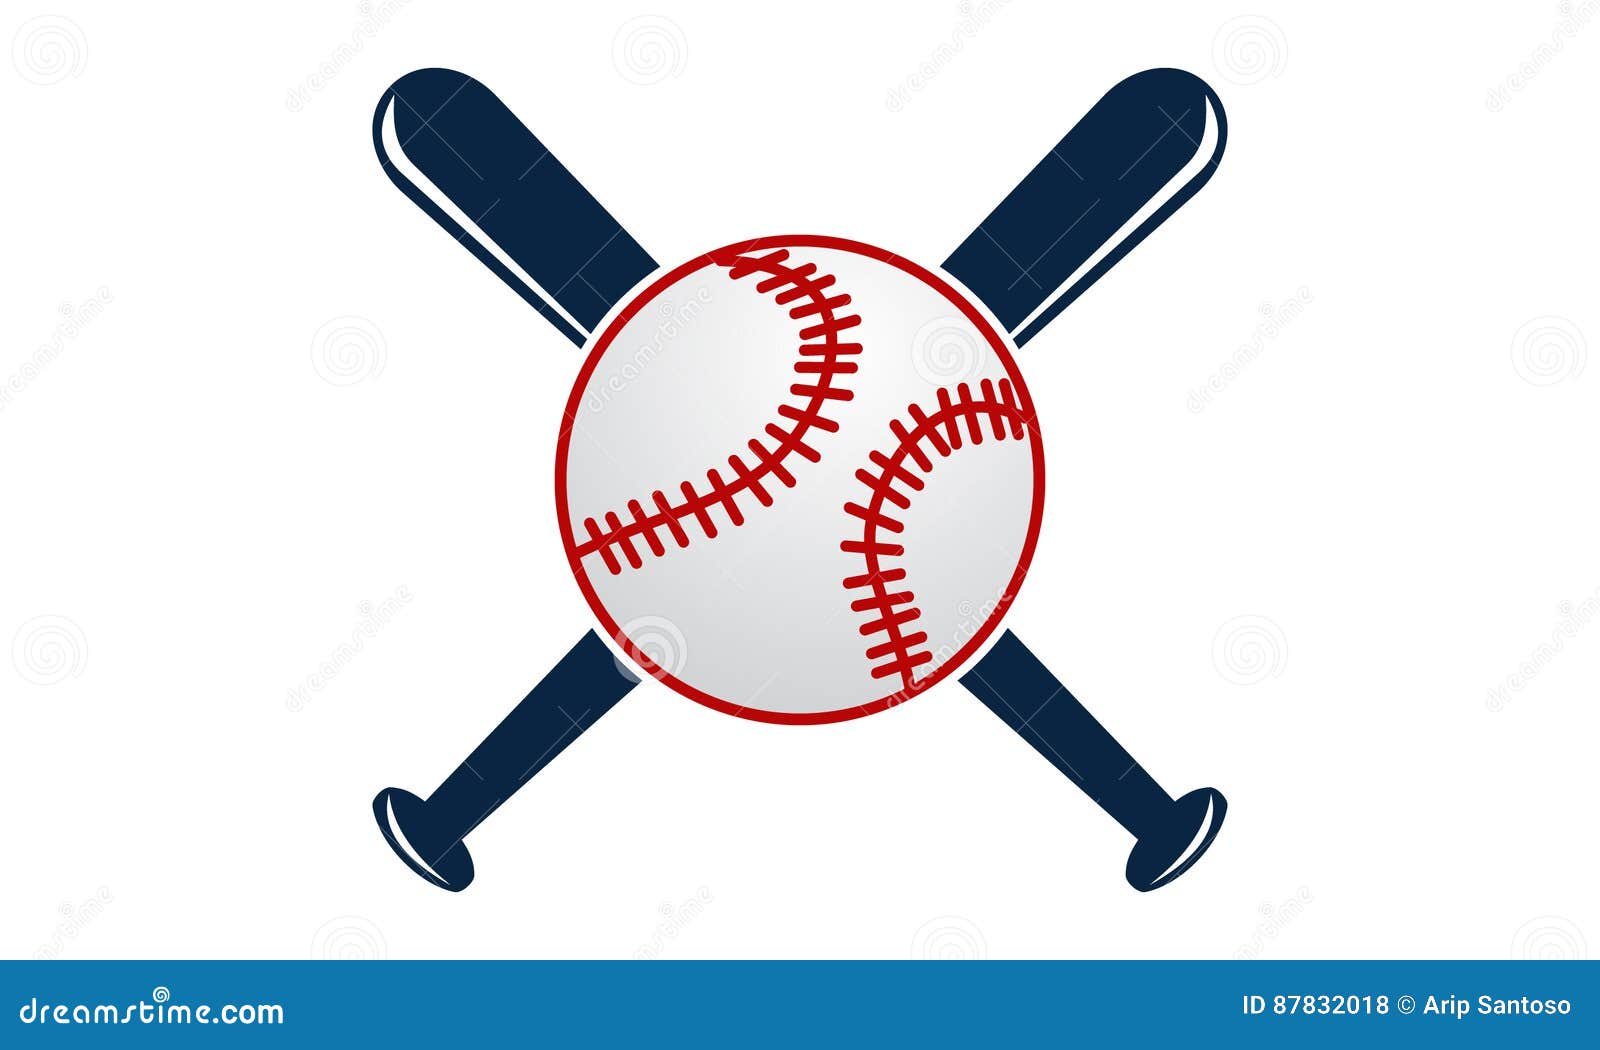 Низкопробный. Бейсбол символ. Скрещенные биты рисунок. Baseball b symbol. Badge Ball.